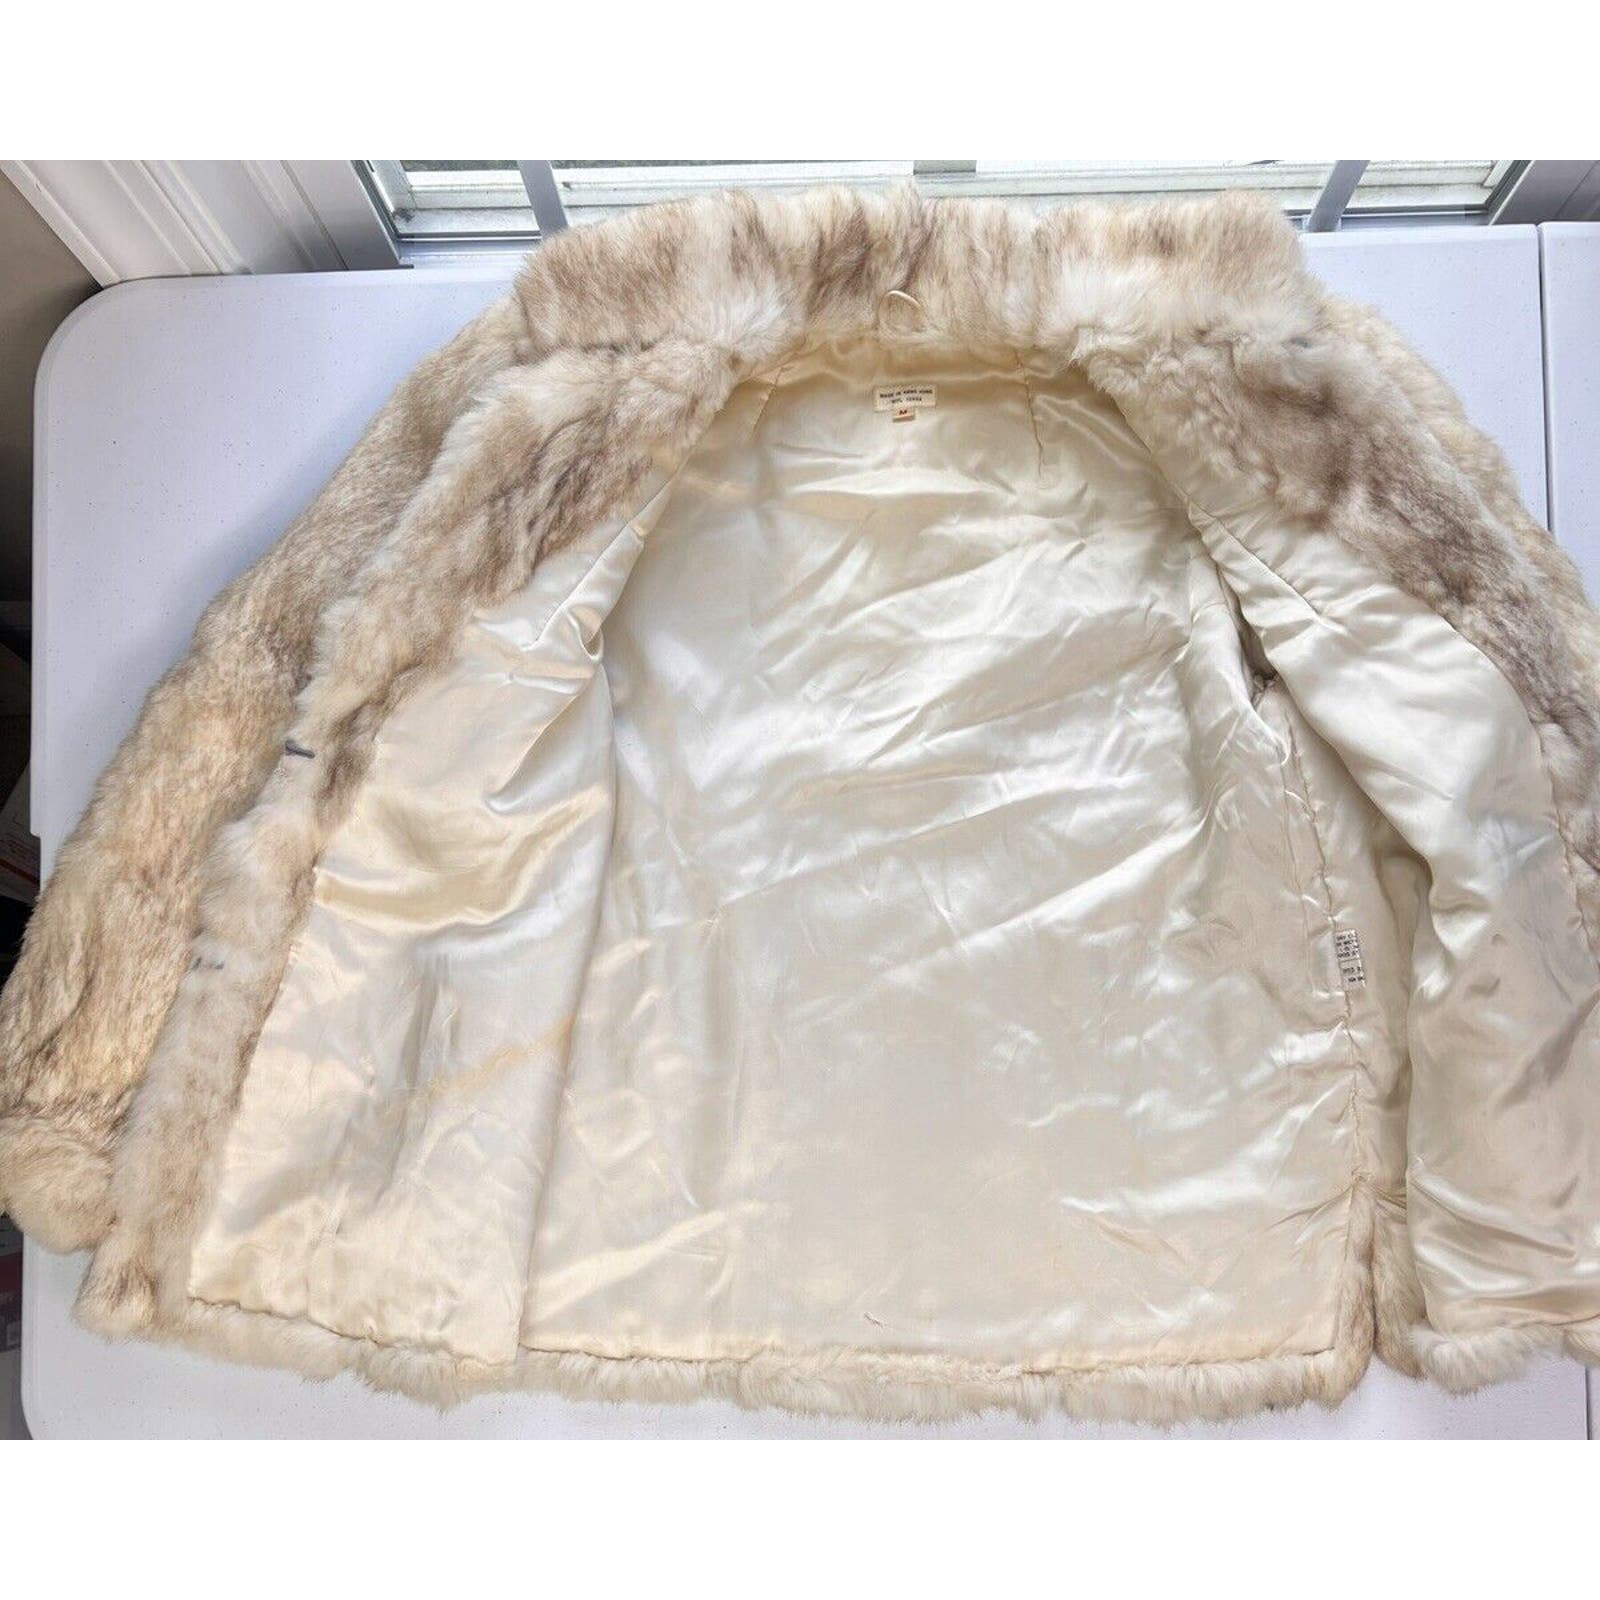 Vintage Genuine Rabbit Fur Coat Jacket Women’s Size M Cream w/ Dark Tips Pockets